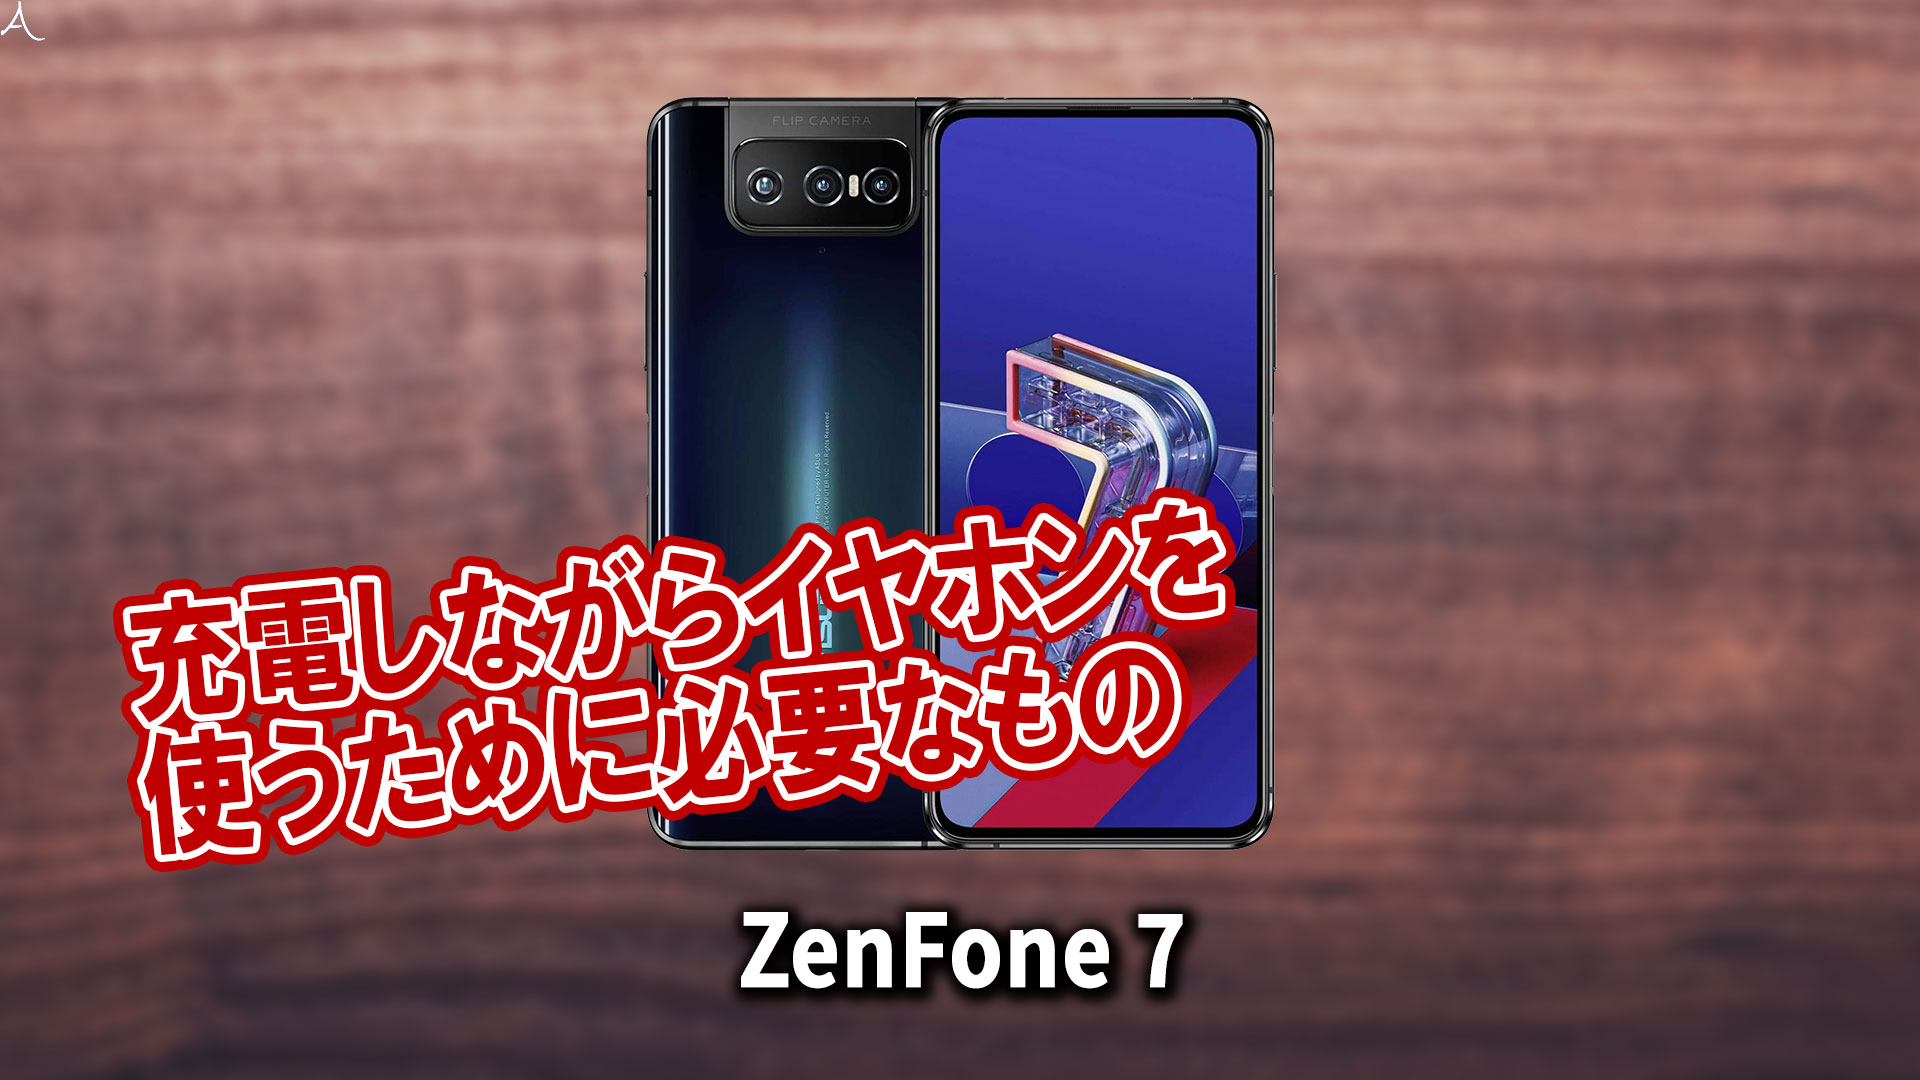 「ZenFone 7」で充電しながらイヤホンを使うために必要なもの